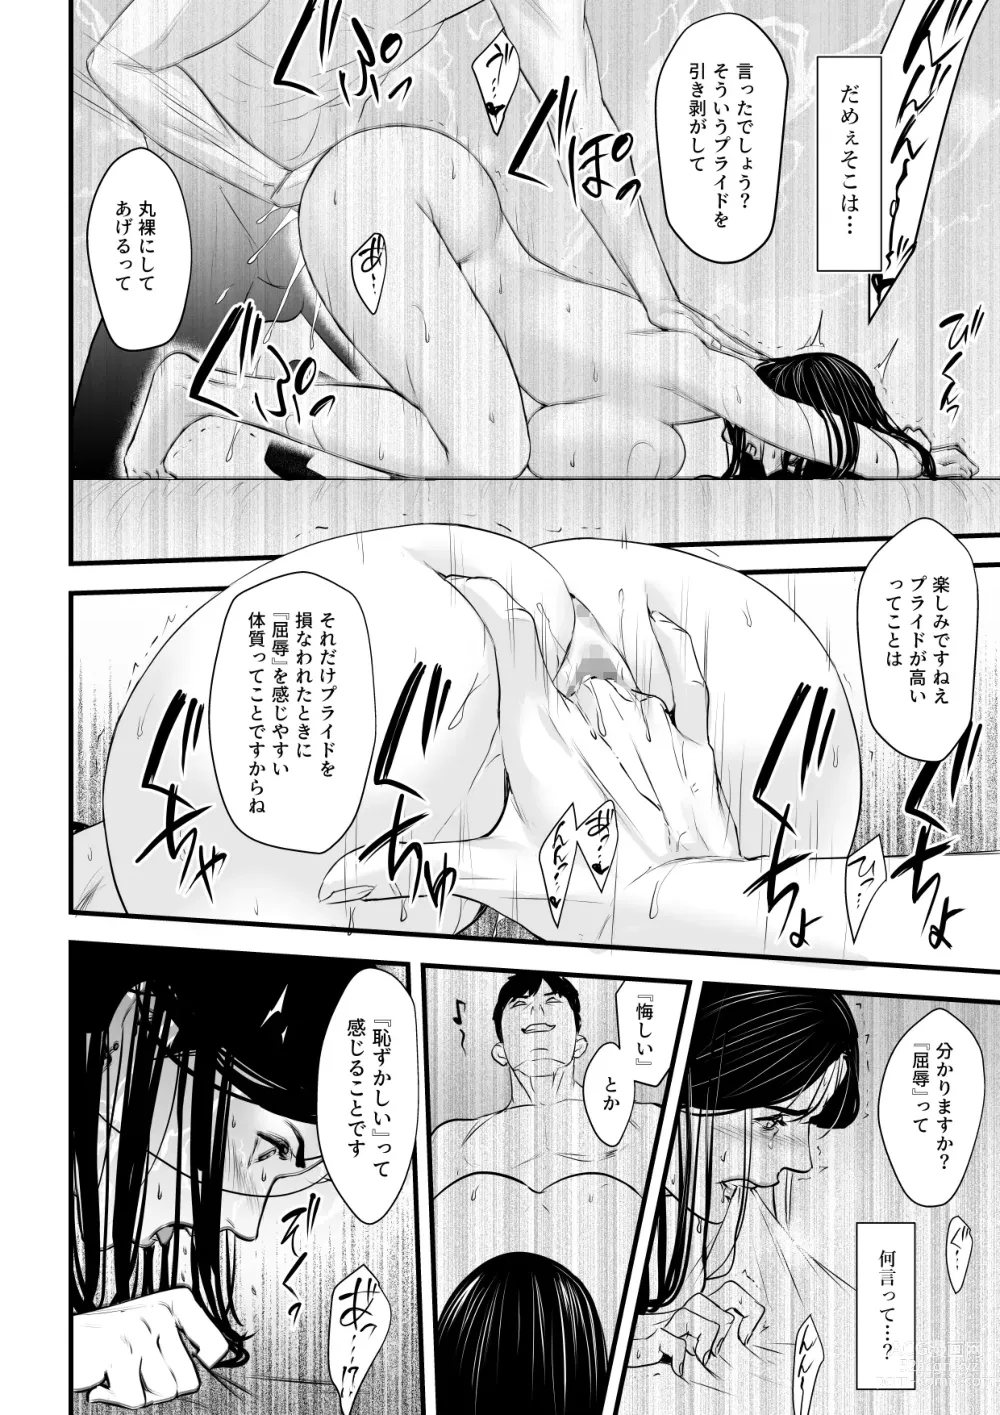 Page 25 of doujinshi Erito onnakachouwa kukkbokusaseraretai